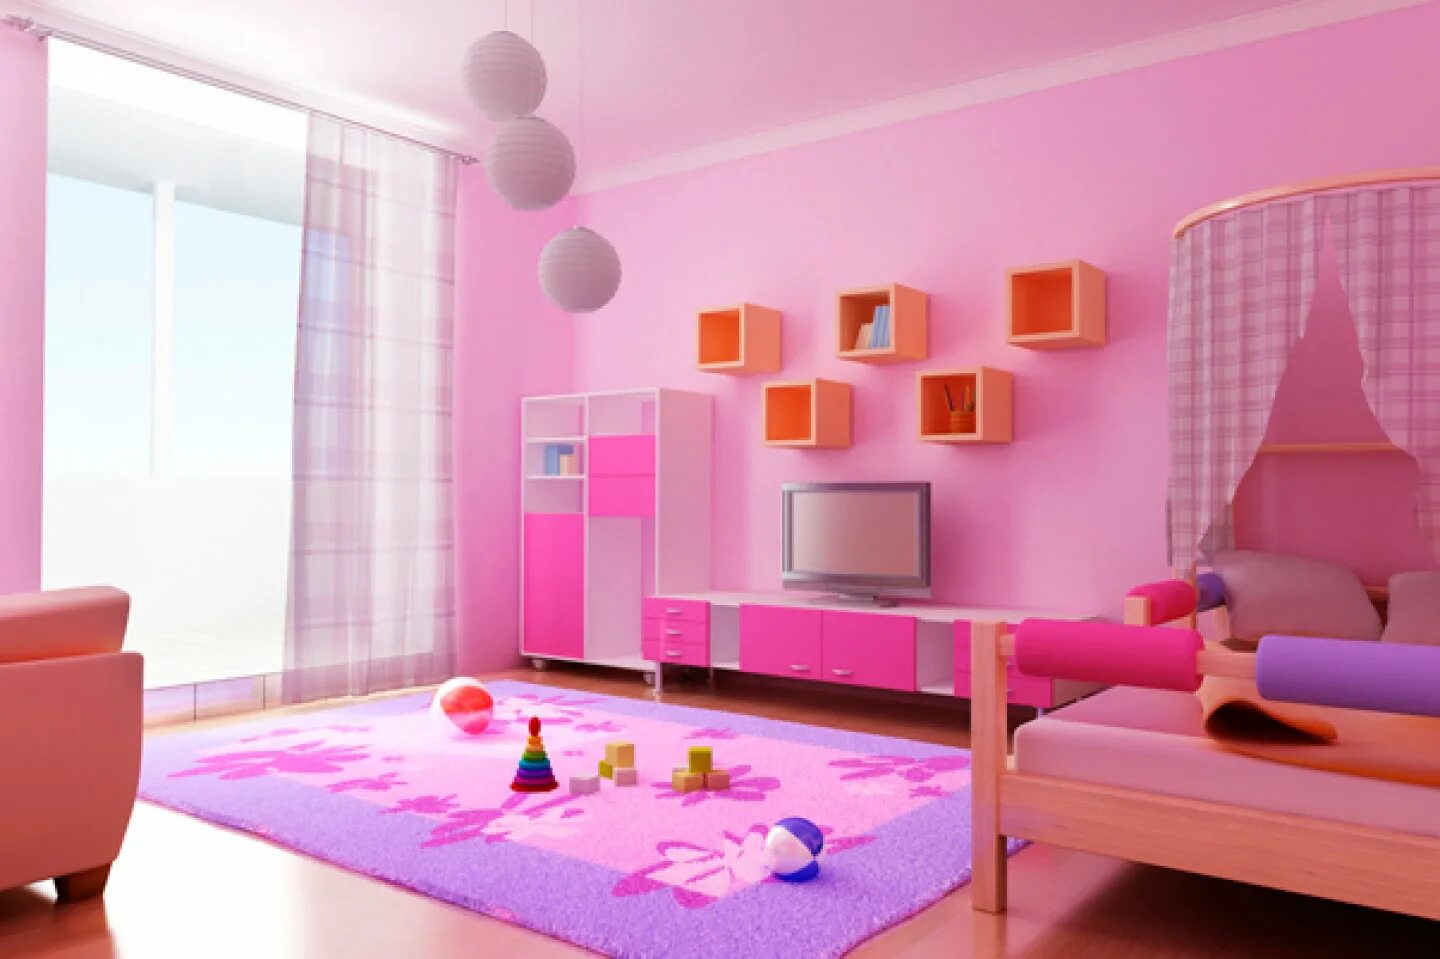 Интерьер комнаты. Интерьер детской комнаты. Розовый интерьер комнаты. Интерьер комнаты для девочки. Нужна новая комната